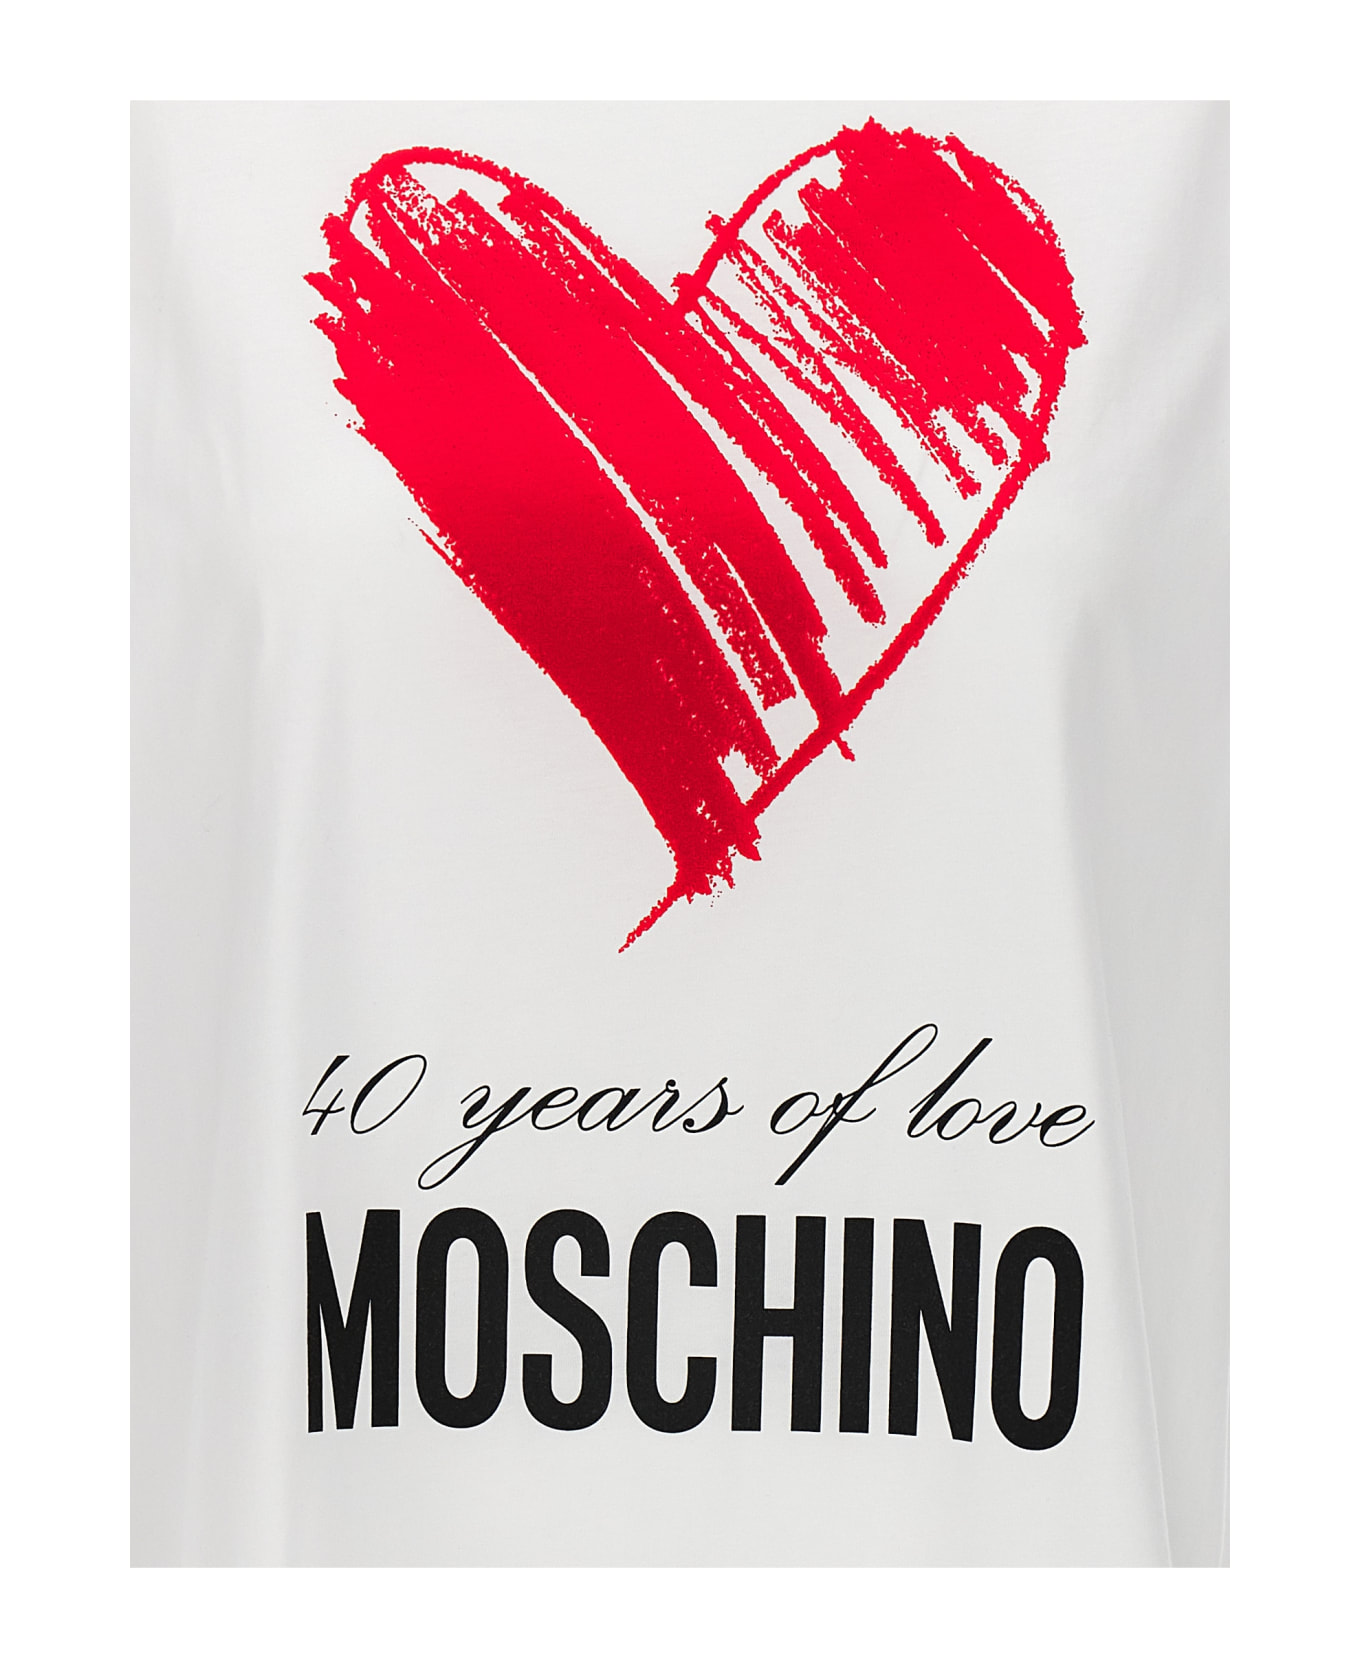 Moschino '40 Years Of Love' T-shirt - White Tシャツ